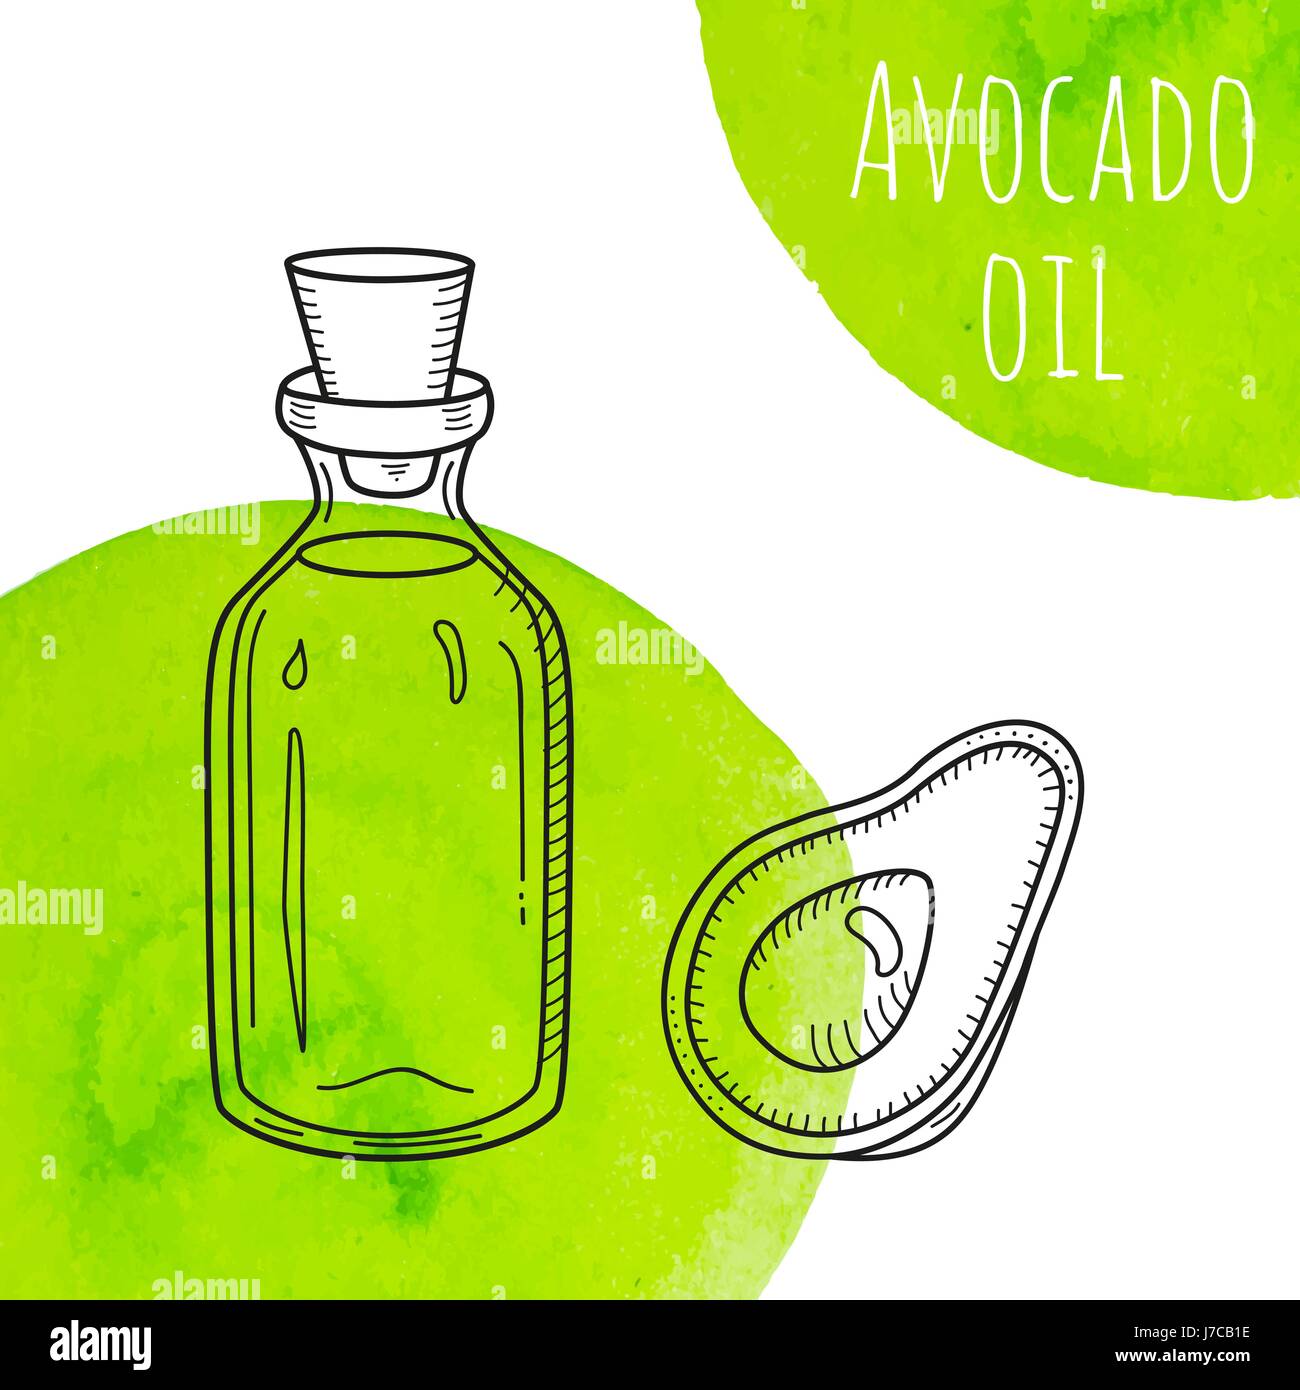 L'huile d'avocat dessinés à la main, avec des taches d'aquarelle vert bouteille Illustration de Vecteur